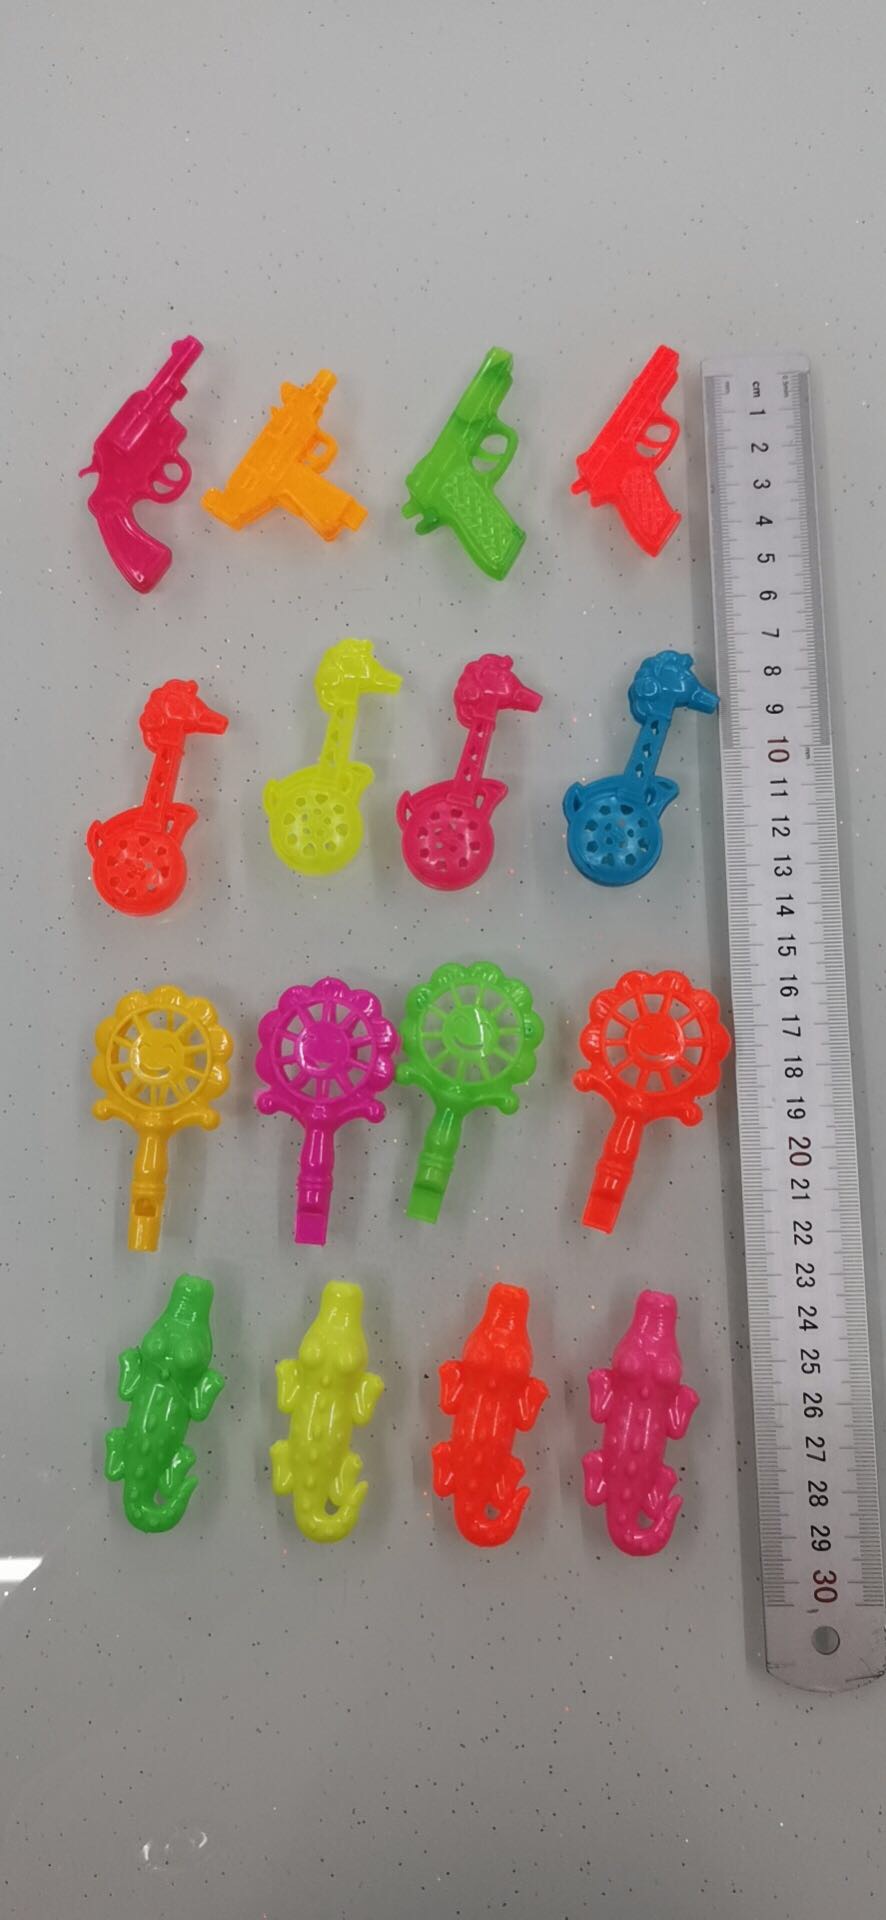 塑料玩具儿童口哨小枪哨子鳄鱼吹哨子儿童玩具图